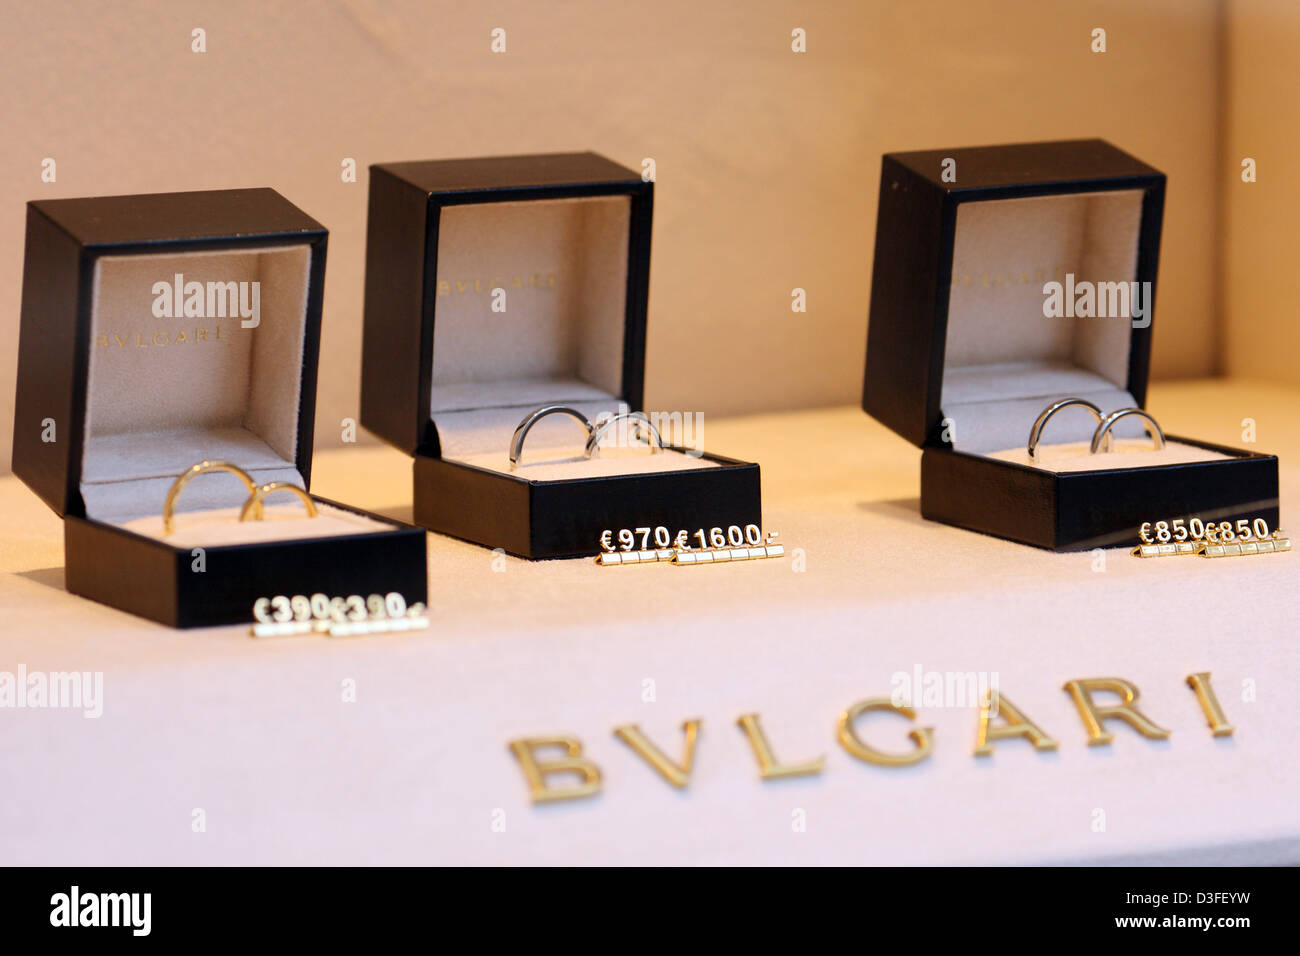 Hamburg, Germany, wedding rings in the window of Bvlgari Stores Stock Photo